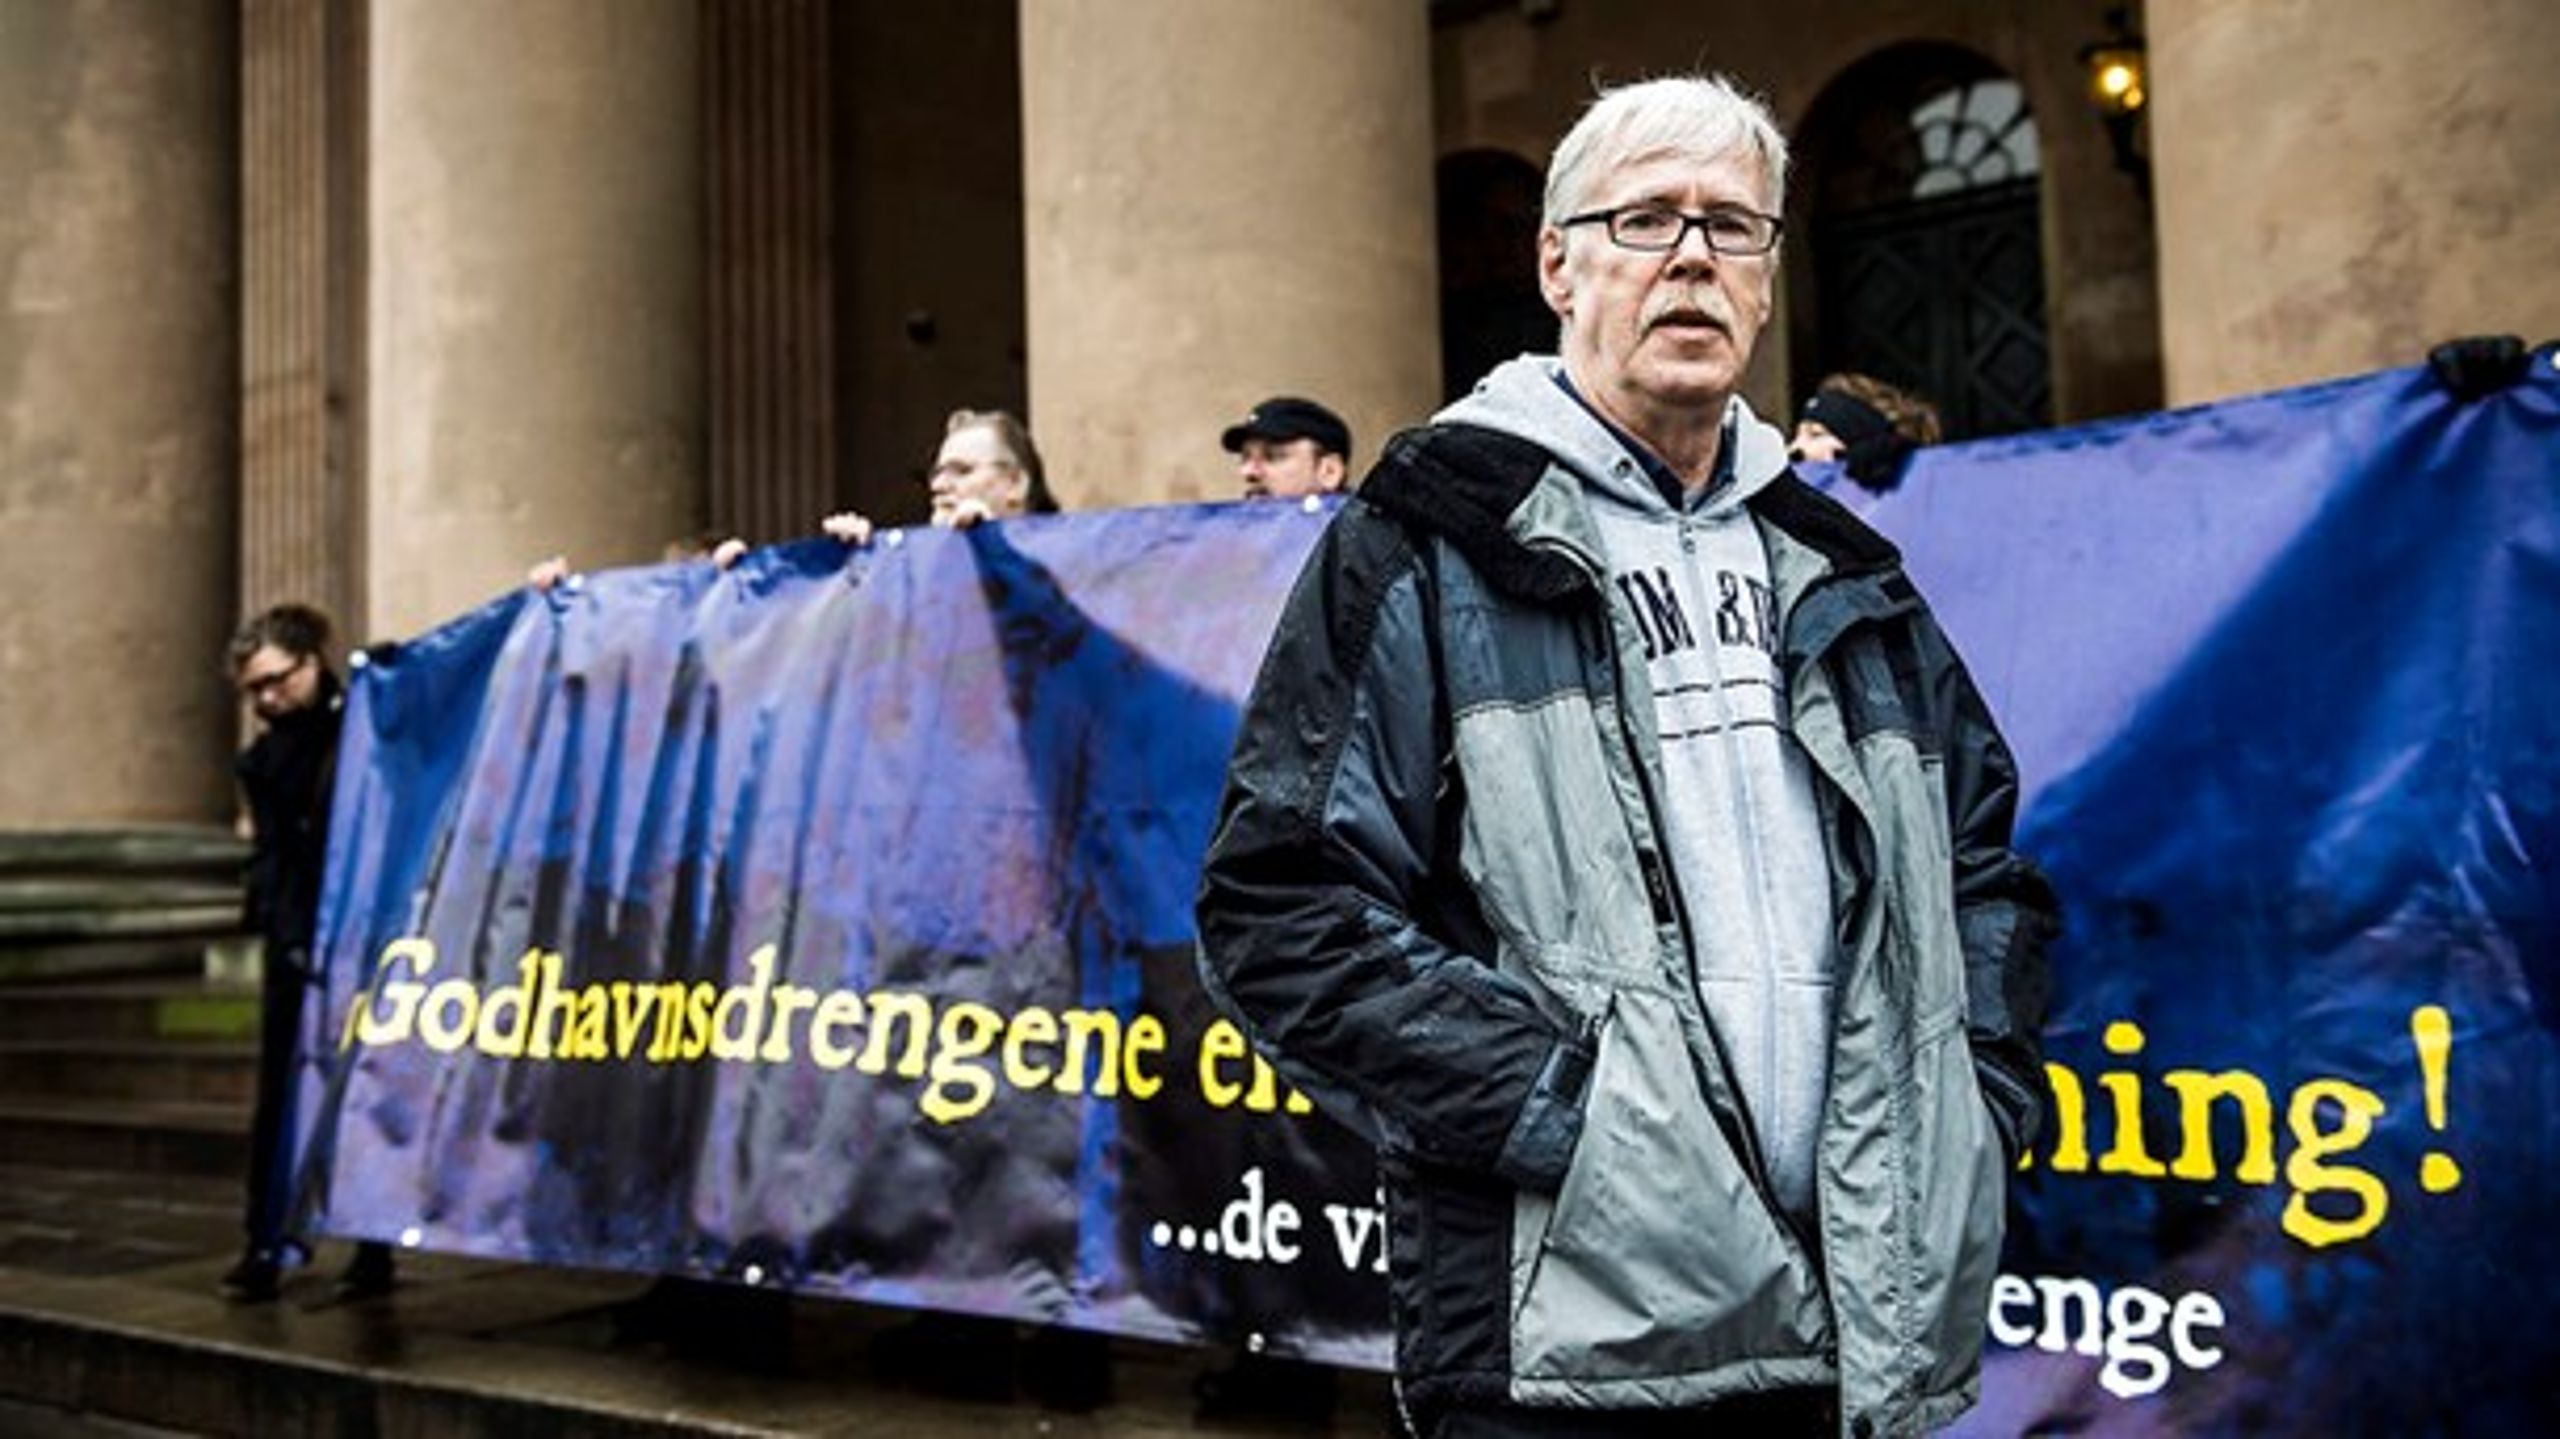 Formand for foreningen af
Godhavnsdrenge, Poul-Erik Rasmussen, under en demonstration på
Nytorv i København 26. marts 2015. Denne uge stemmer Folketinget om, hvorvidt drengene skal modtage en officiel undskyldning.